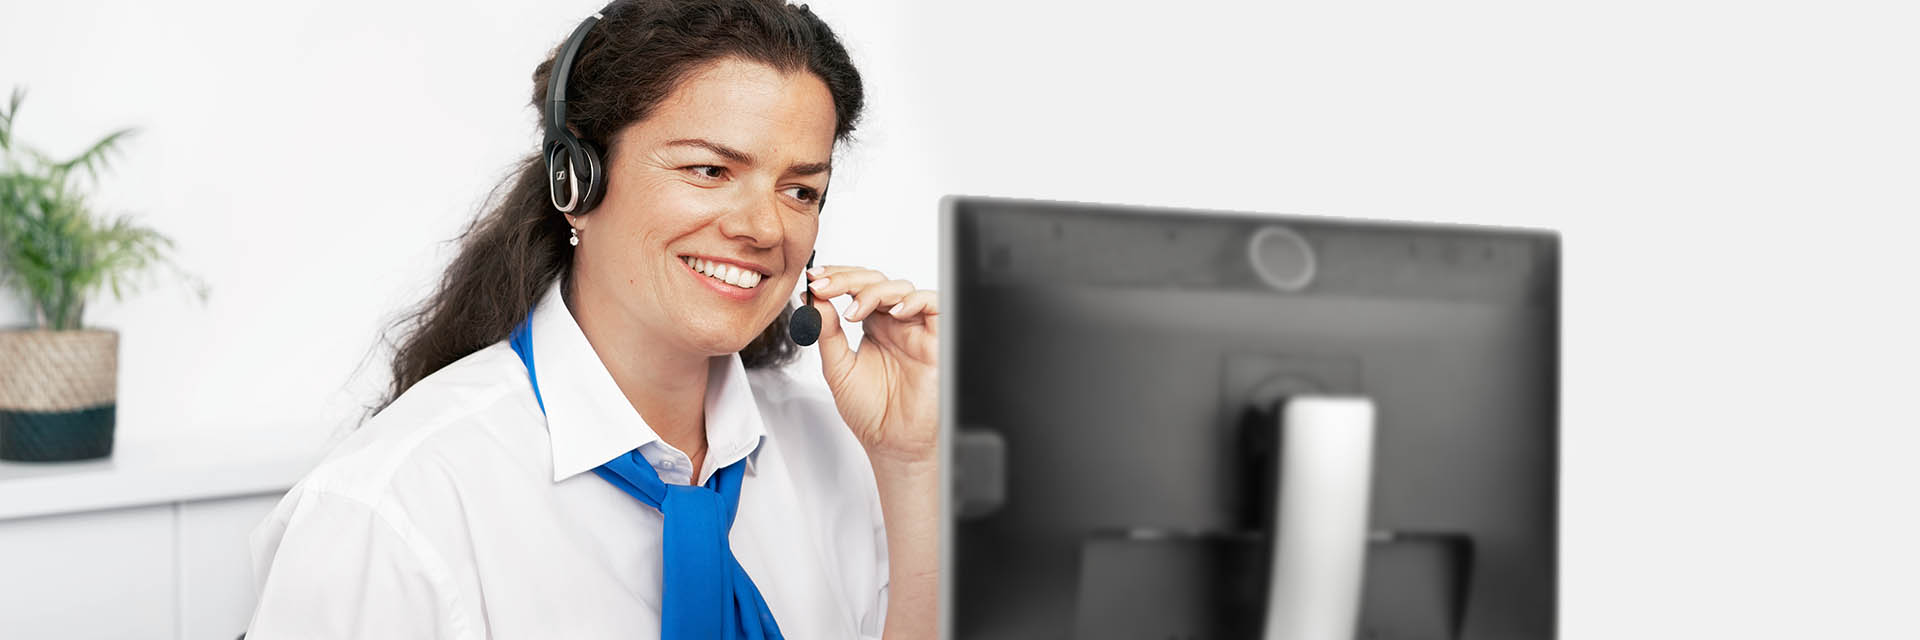 Imagen de mujer en un centro de llamadas contestando una llamada con un auricular